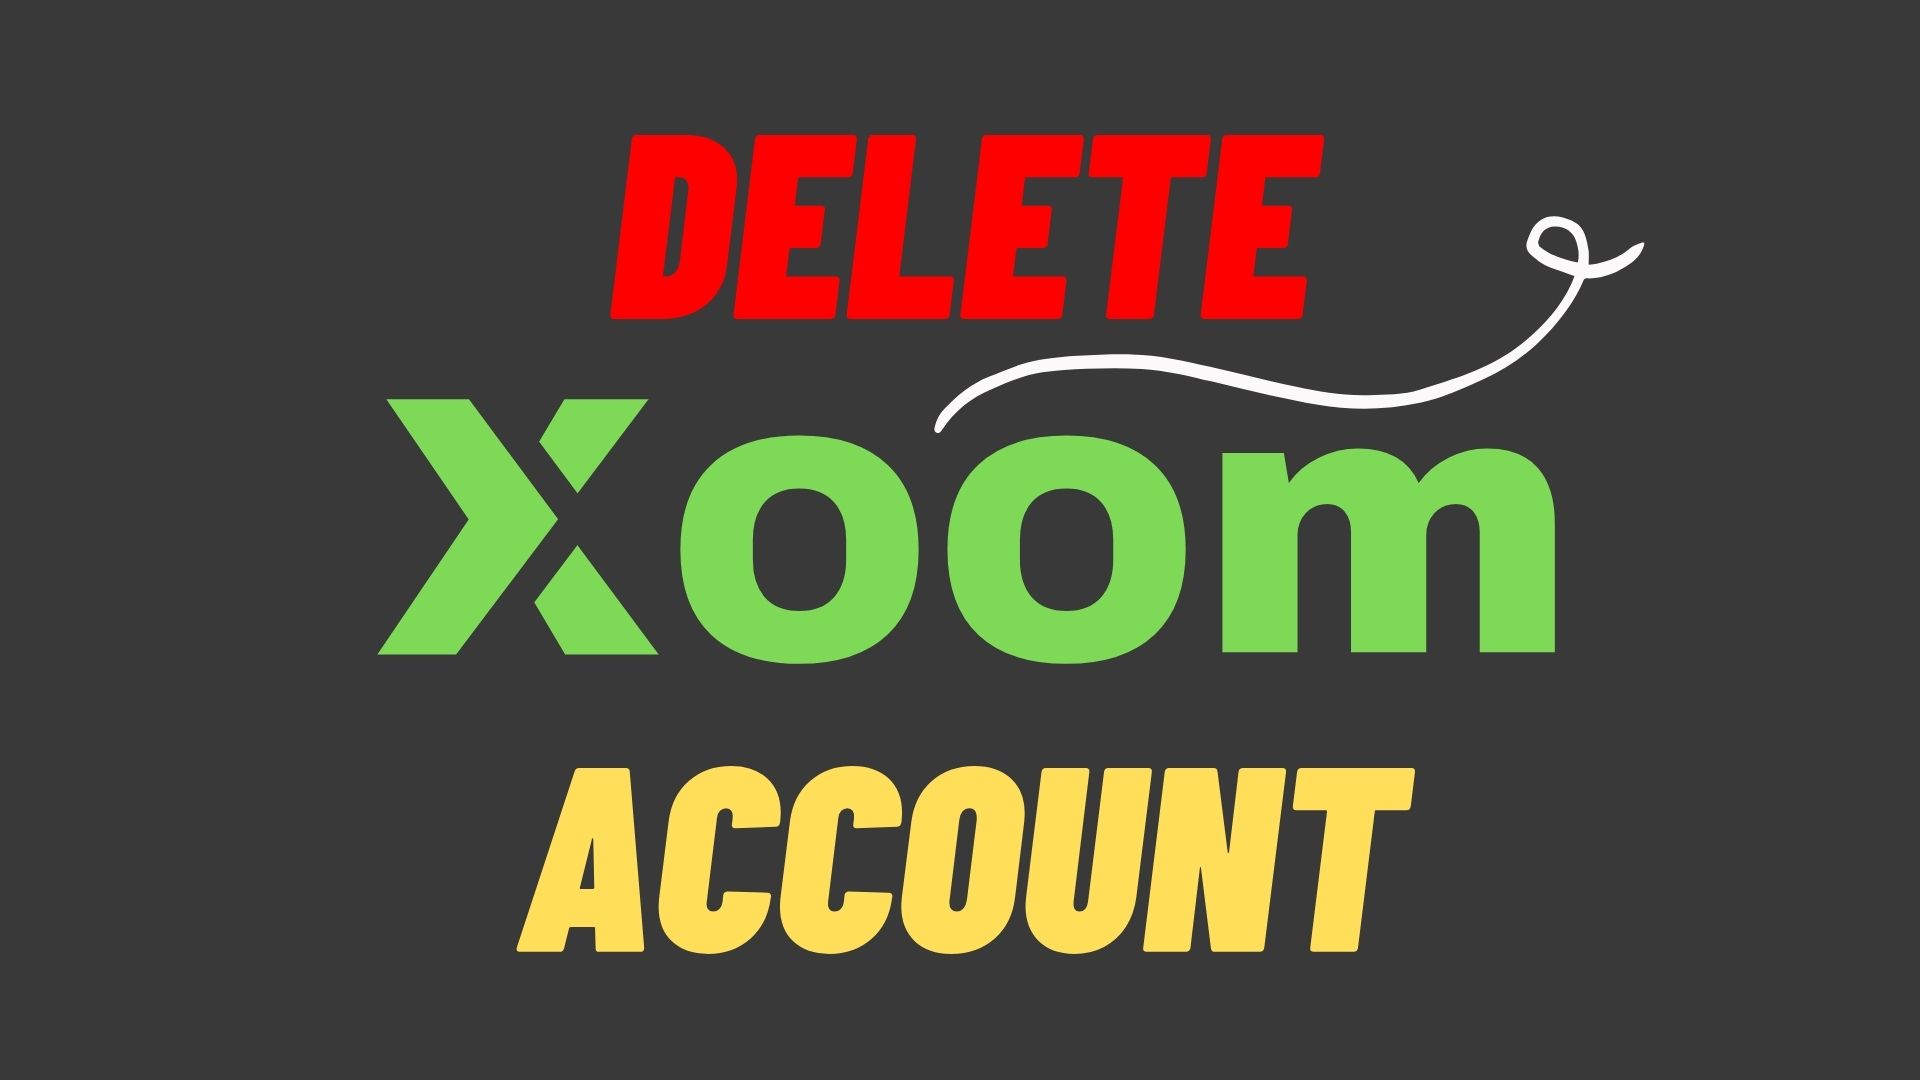 How to Delete Xoom Account